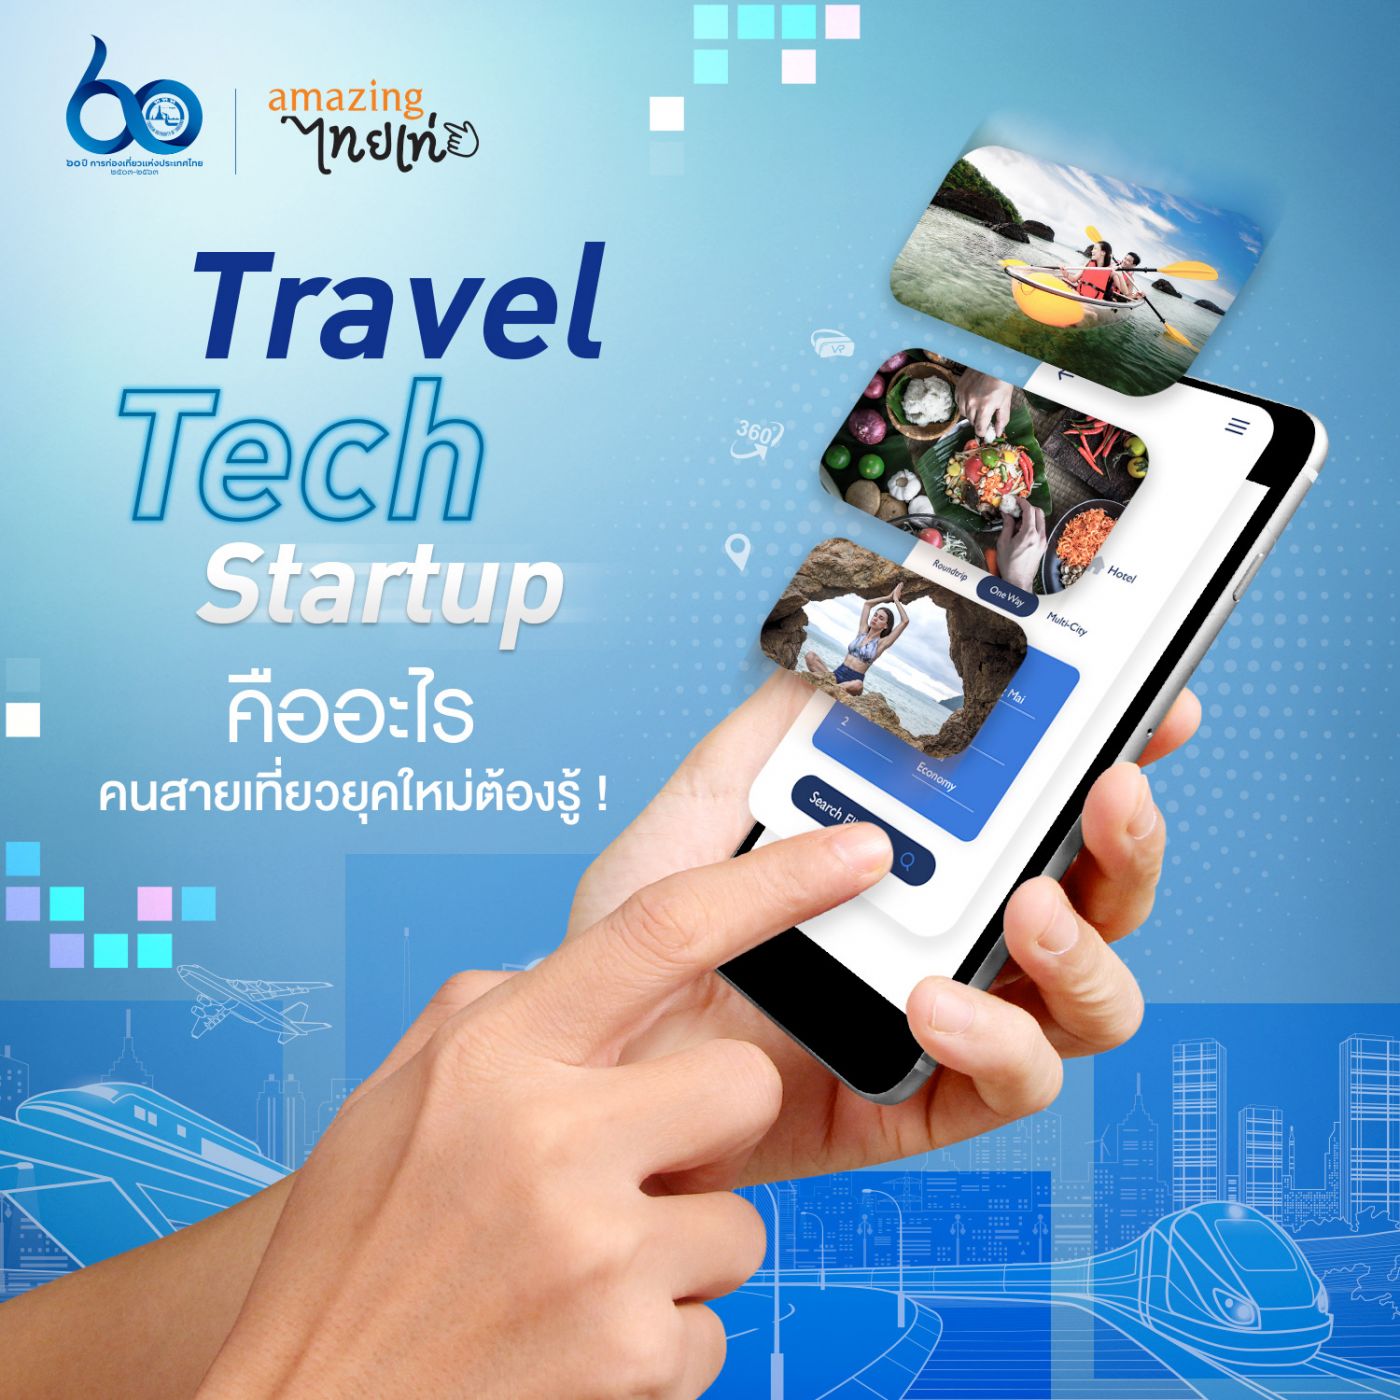 ททท แนะนำ แพลตฟอร์มออนไลน์ Travel Tech เพื่อการท่องเที่ยวในงาน “เที่ยวไทยไฮเทค”